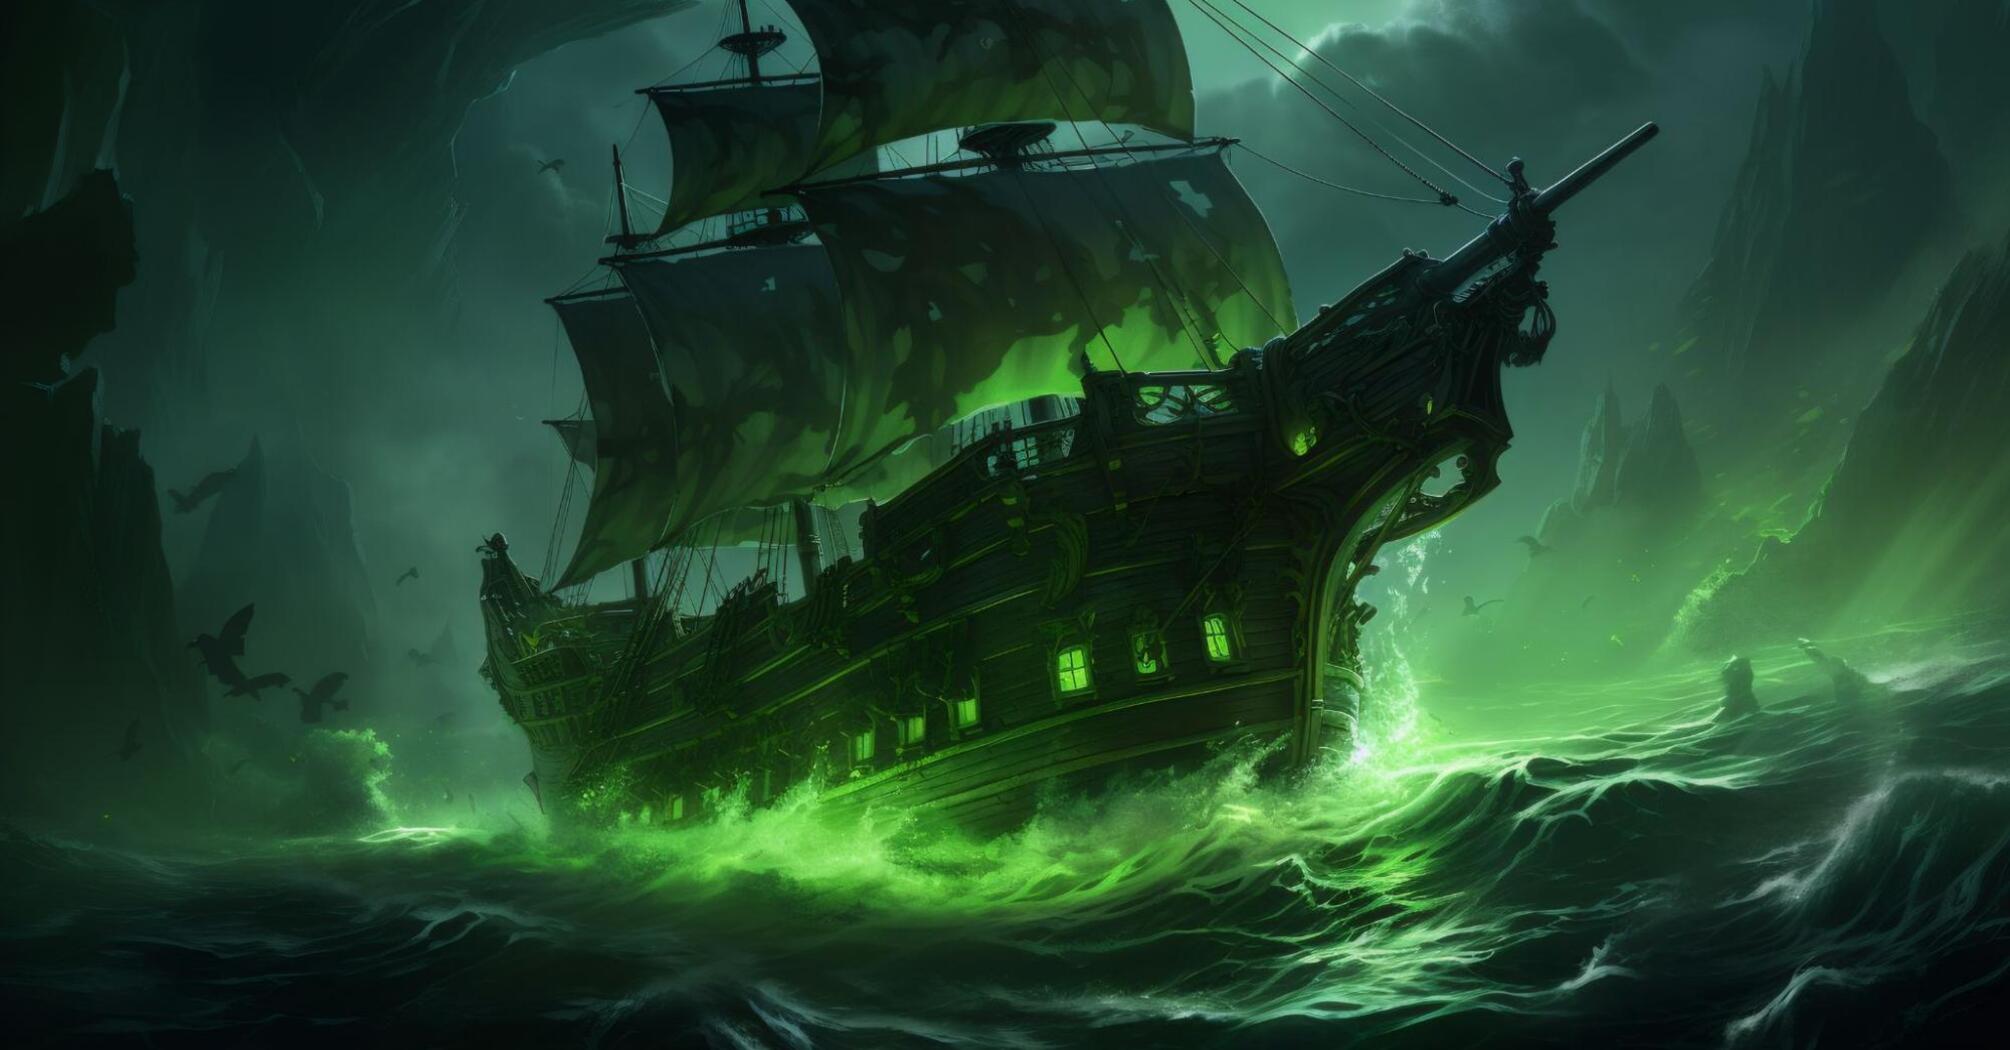 Ghost ship shrouded in green light